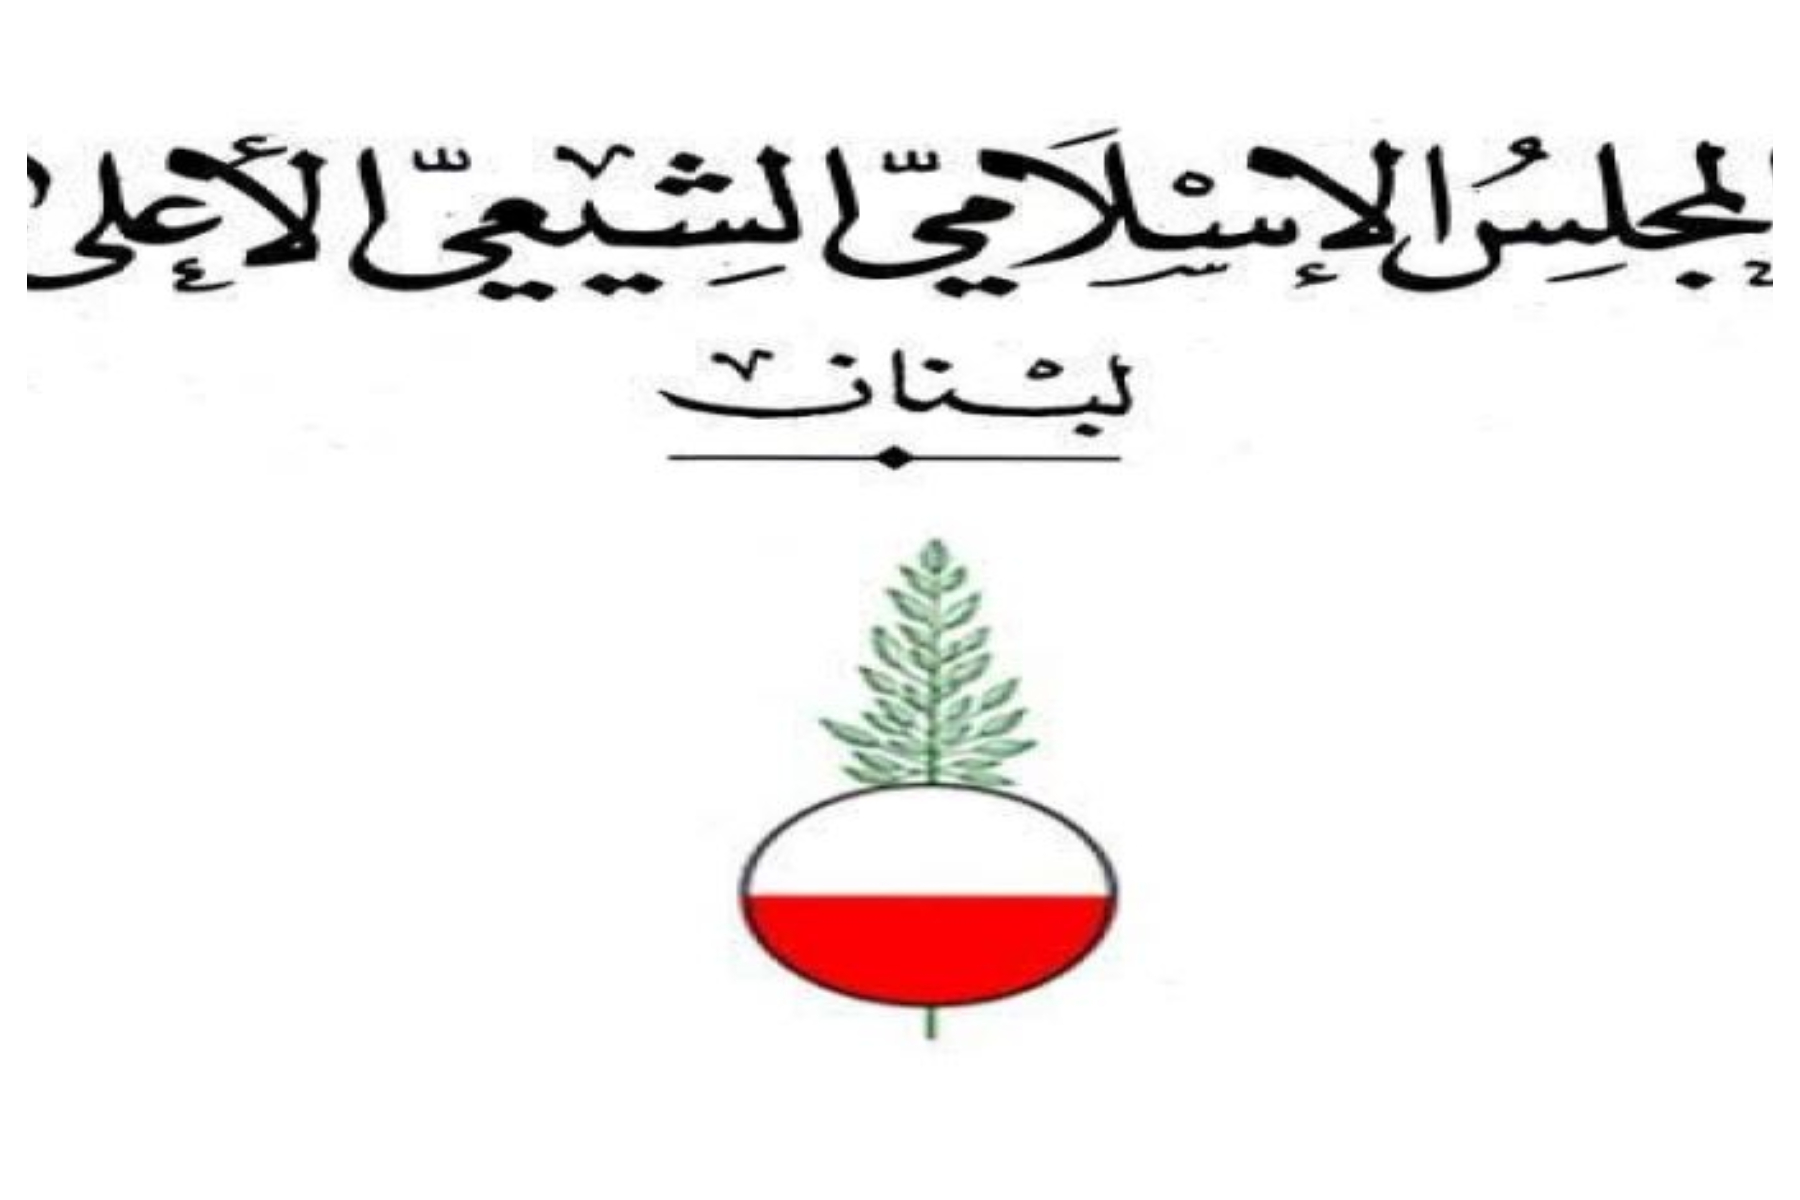 بیانیه مجلس شیعیان لبنان در پی شیوع کرونا